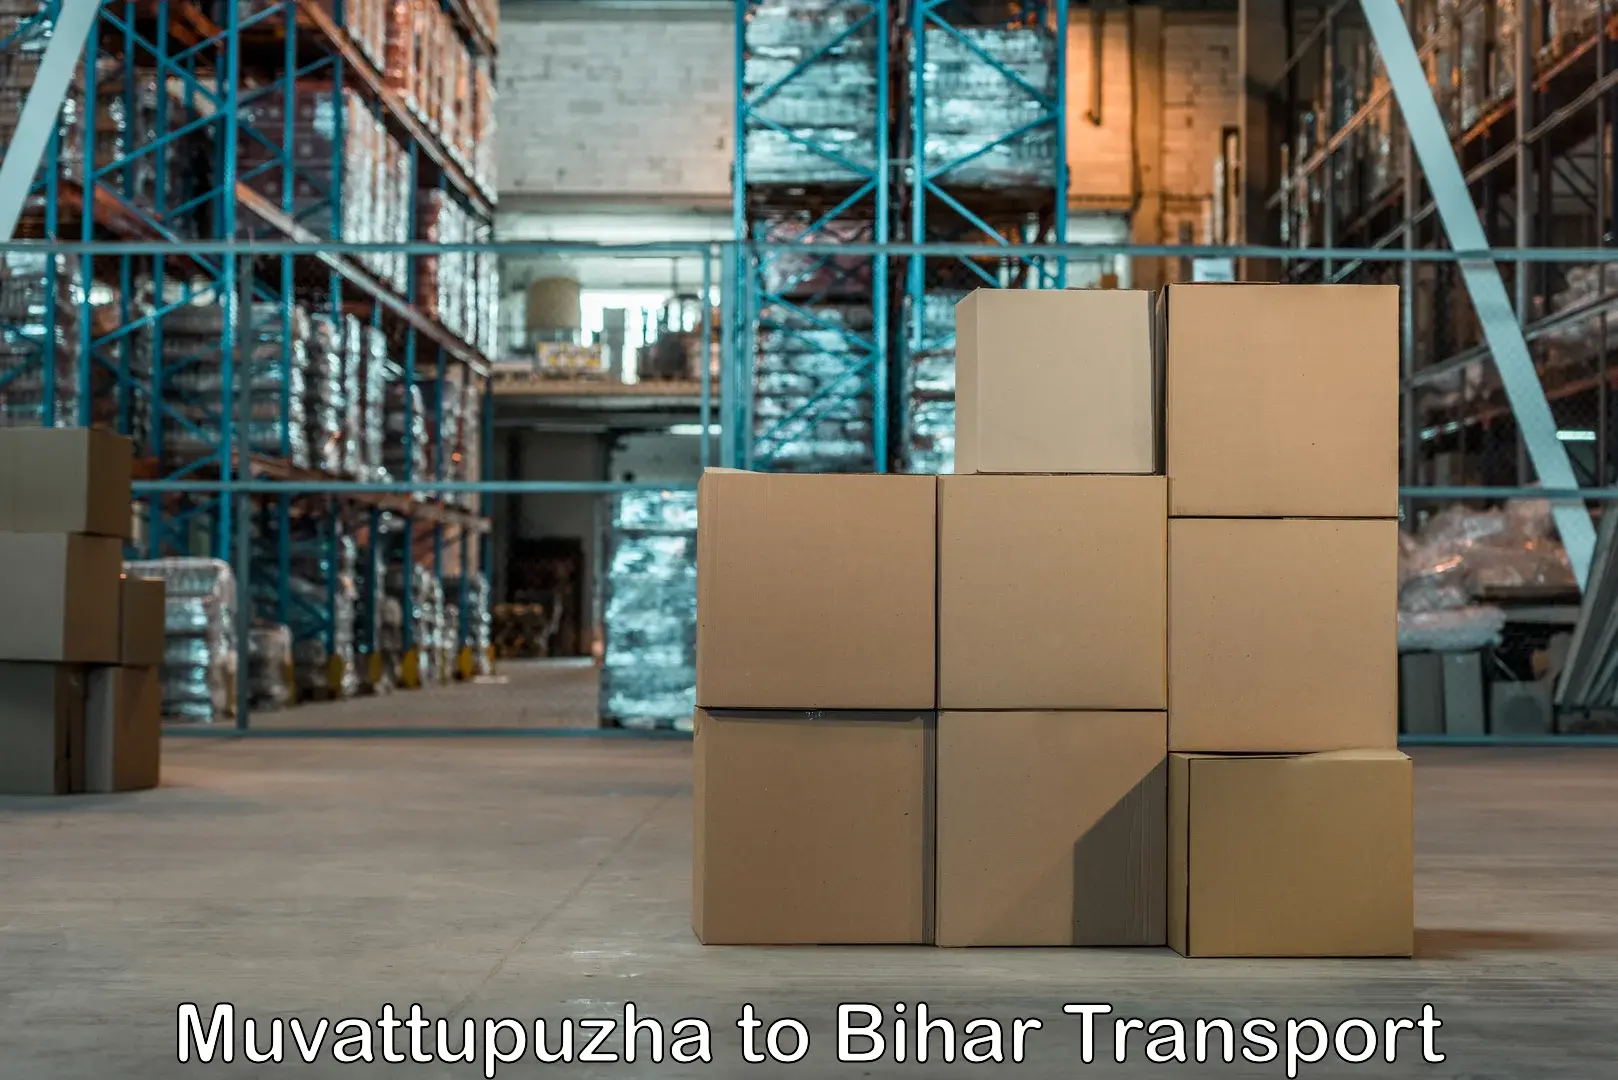 Furniture transport service Muvattupuzha to Basopatti